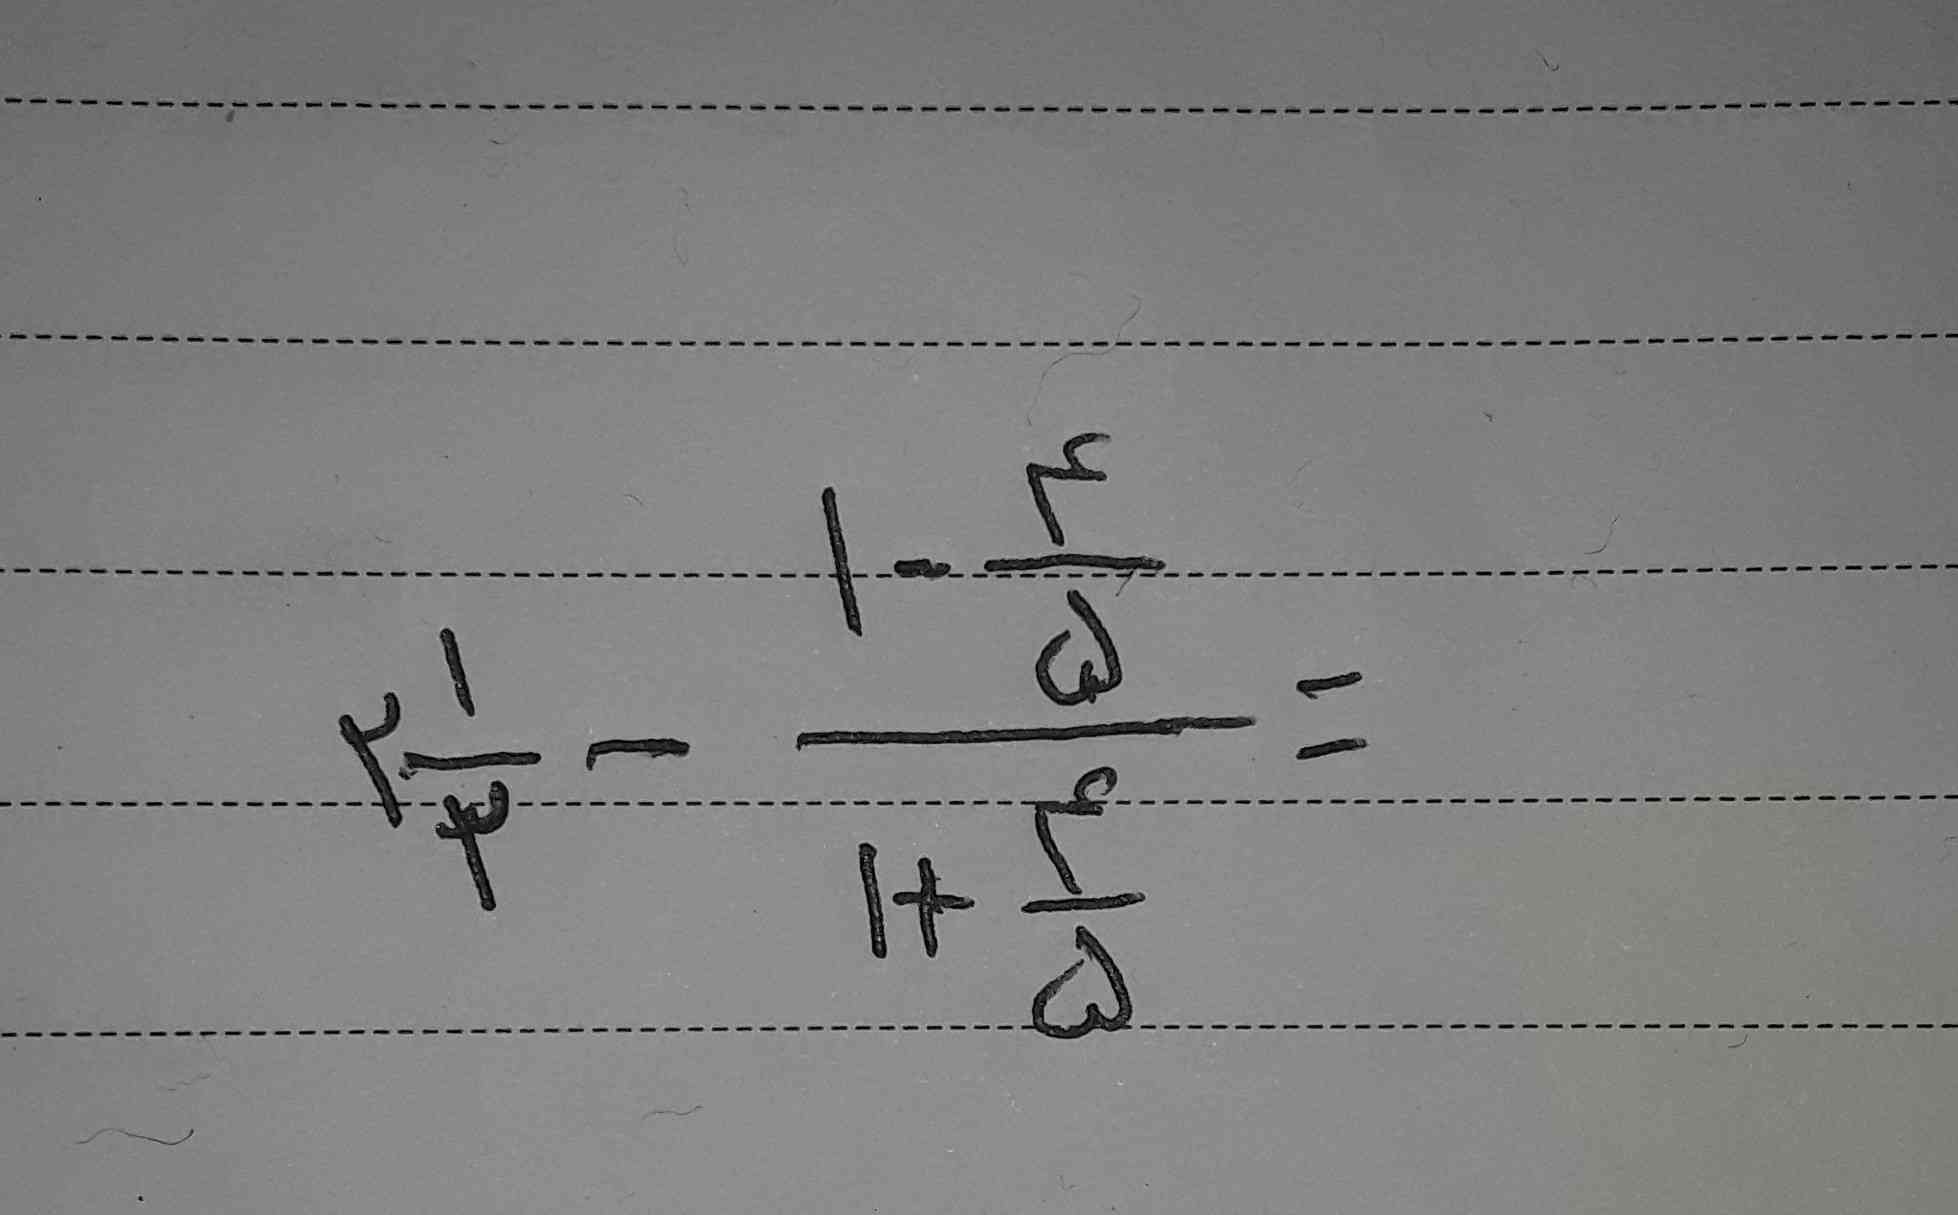 جواب معادله زیر را بنویسید

